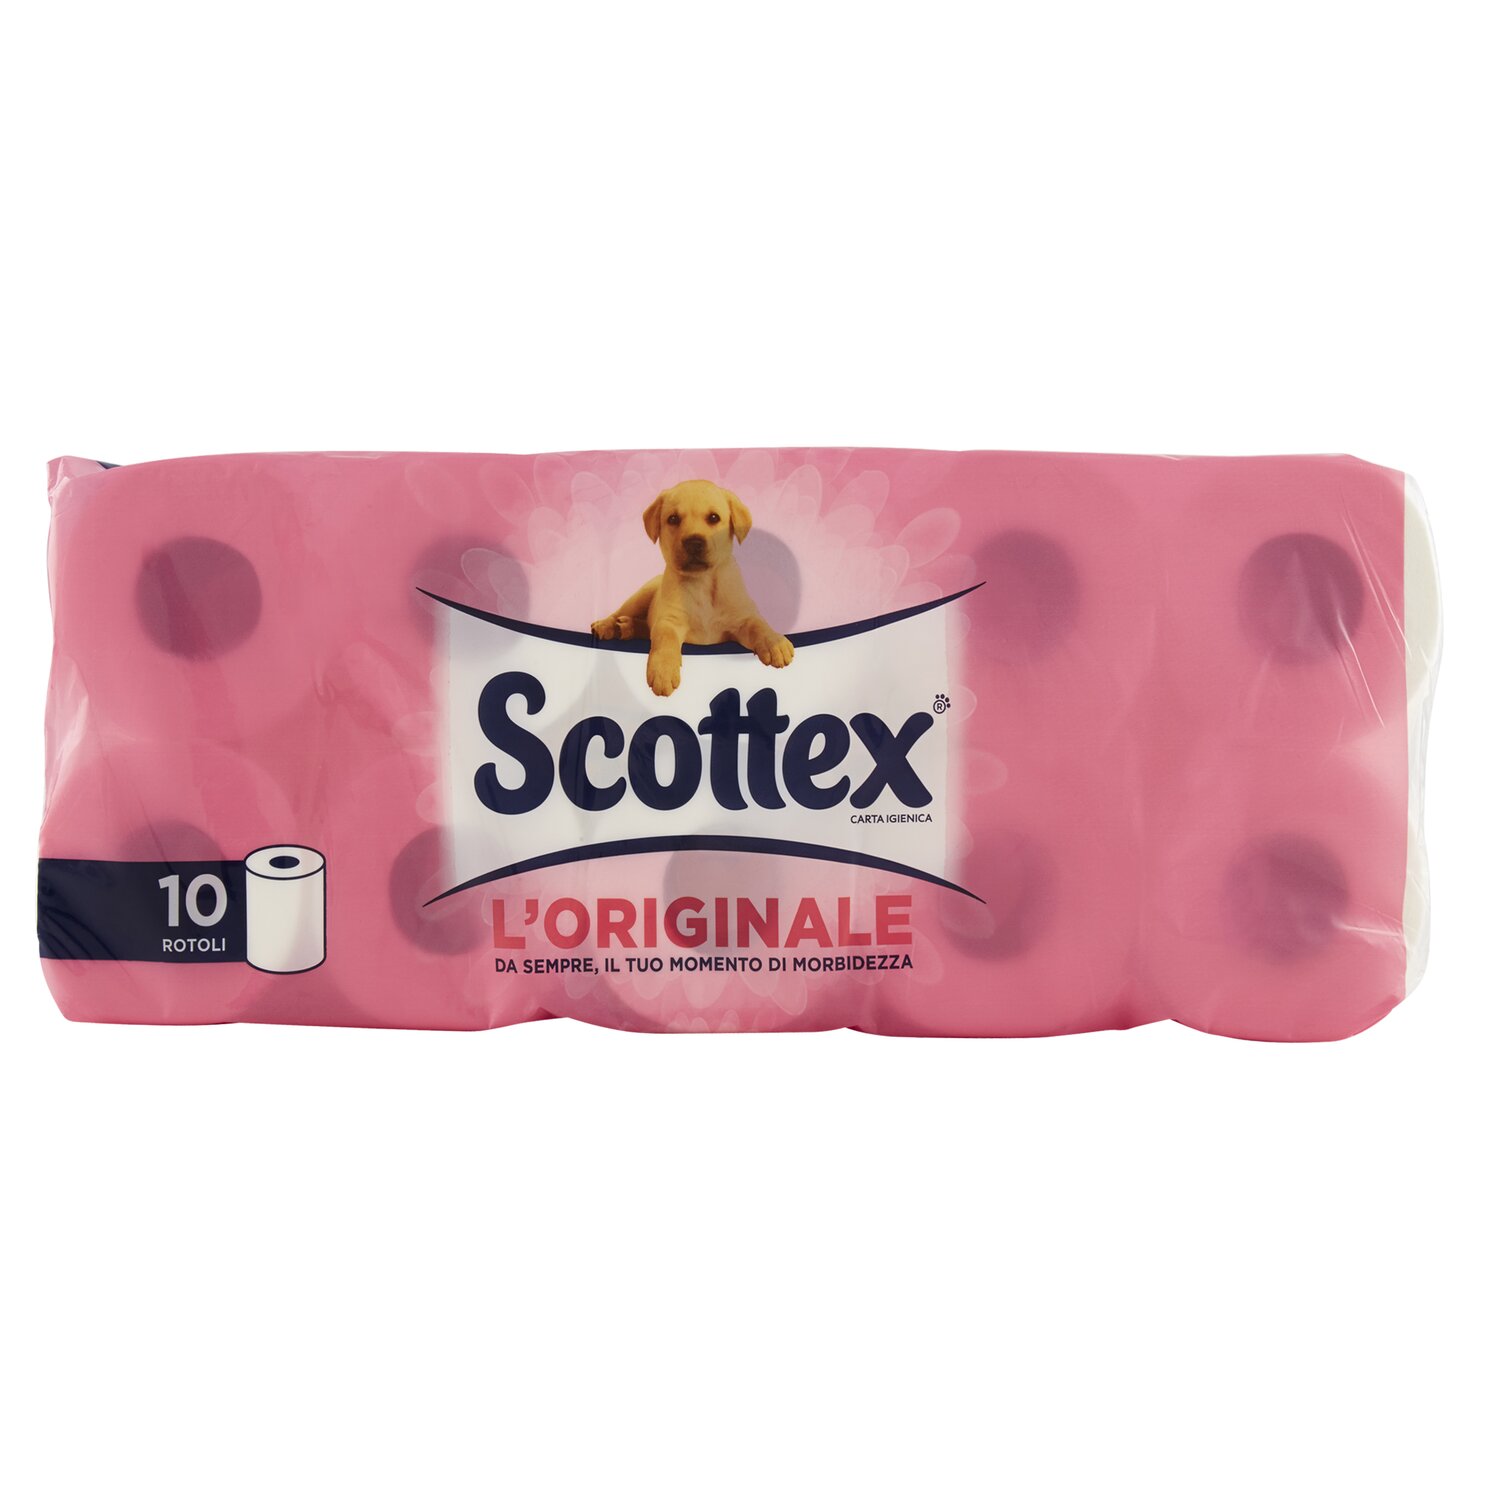 scottex prodotti 2 lunga conservazione tovaglie e carte speciali carta igienica 10 rot scottex 0